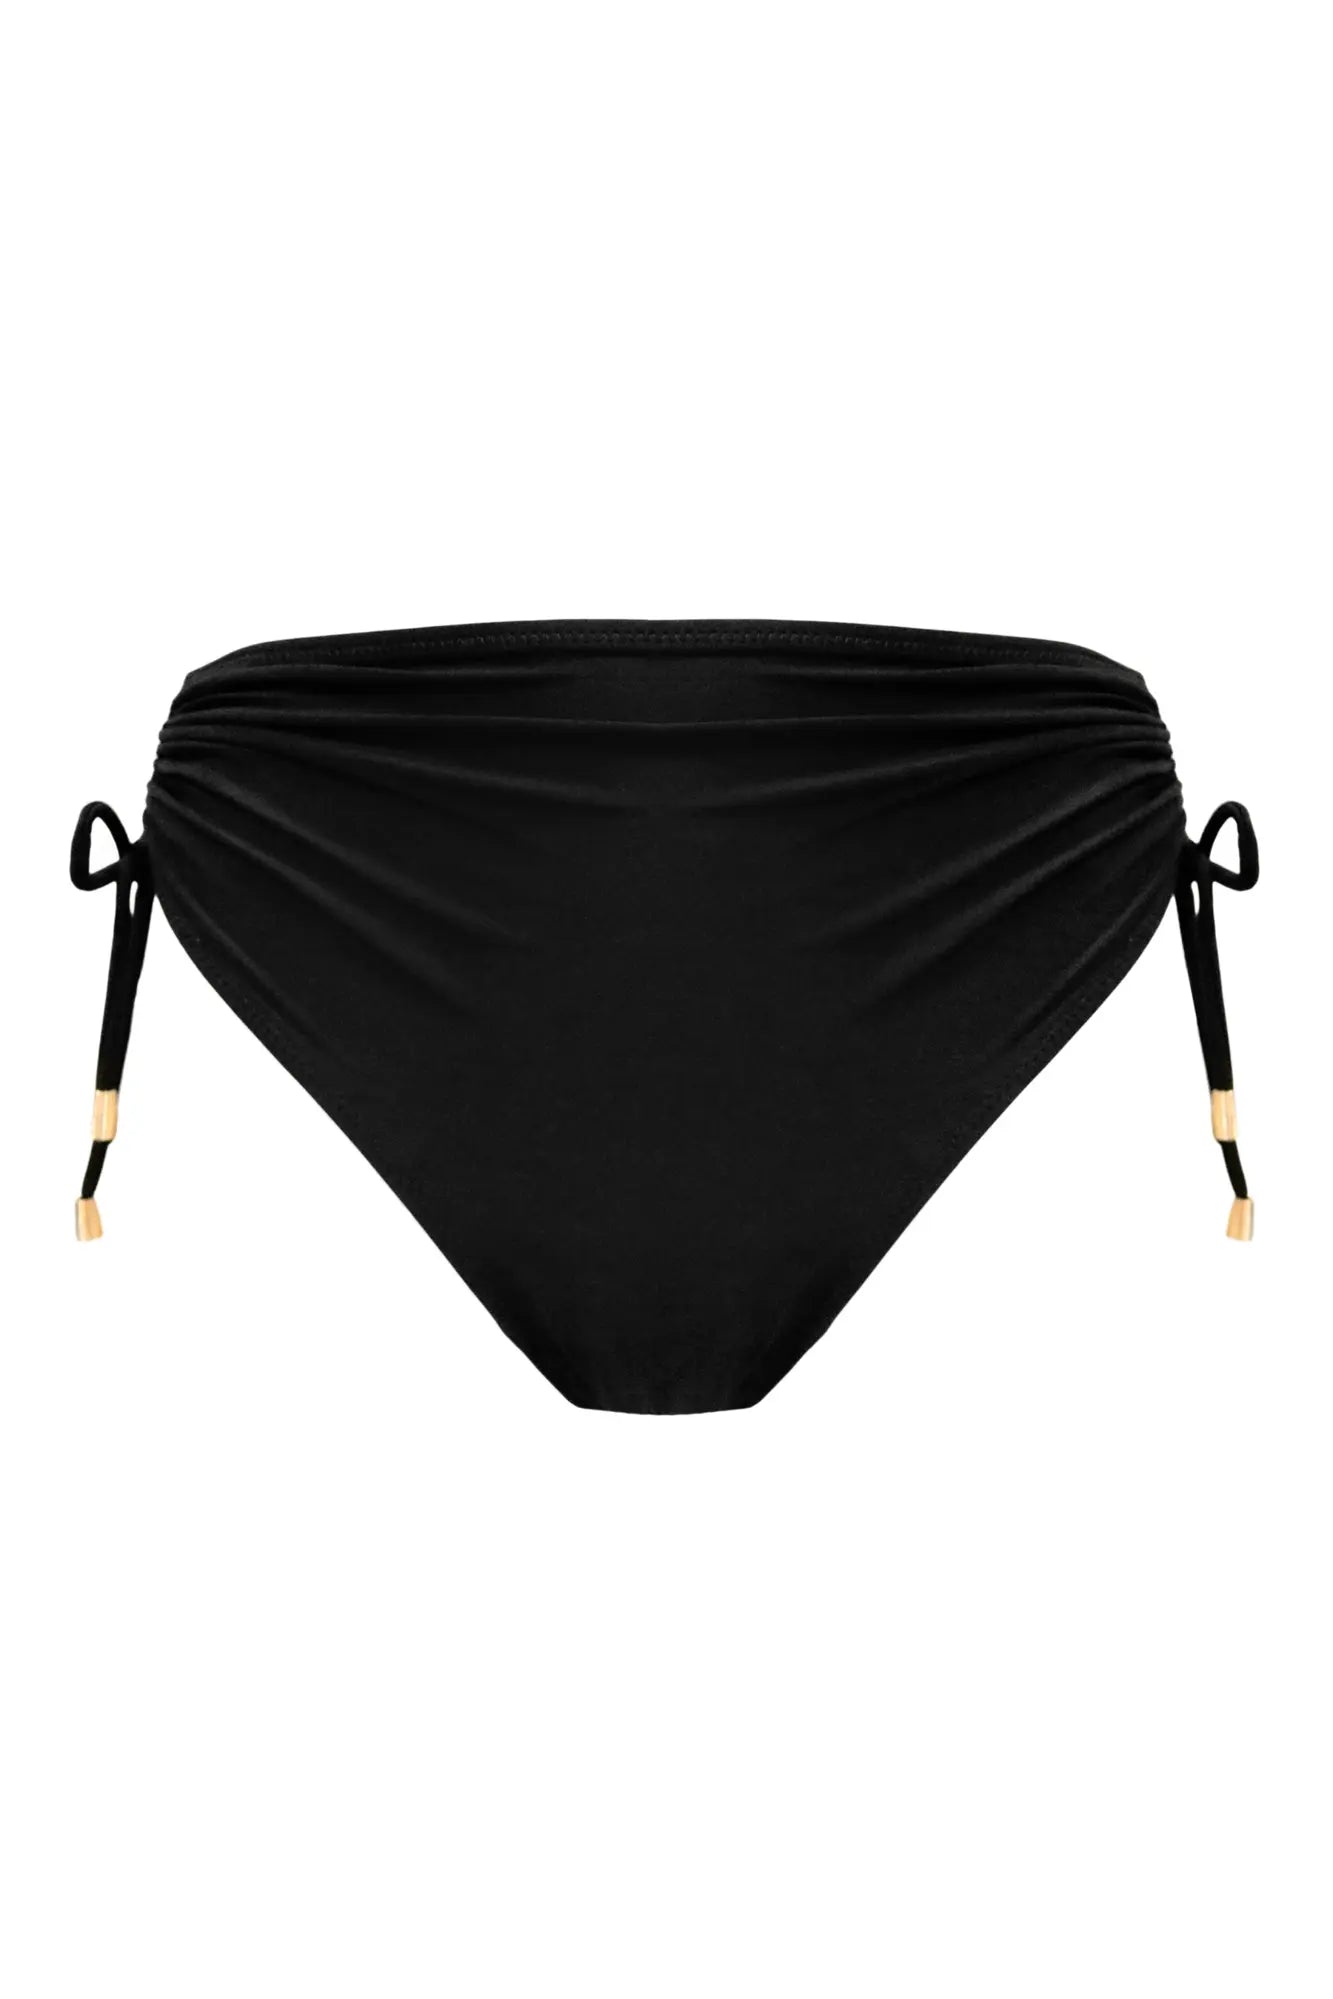 Santa Cruz - Bas de bikini échancré réglable sur les côtés - Noir - Pour Moi 